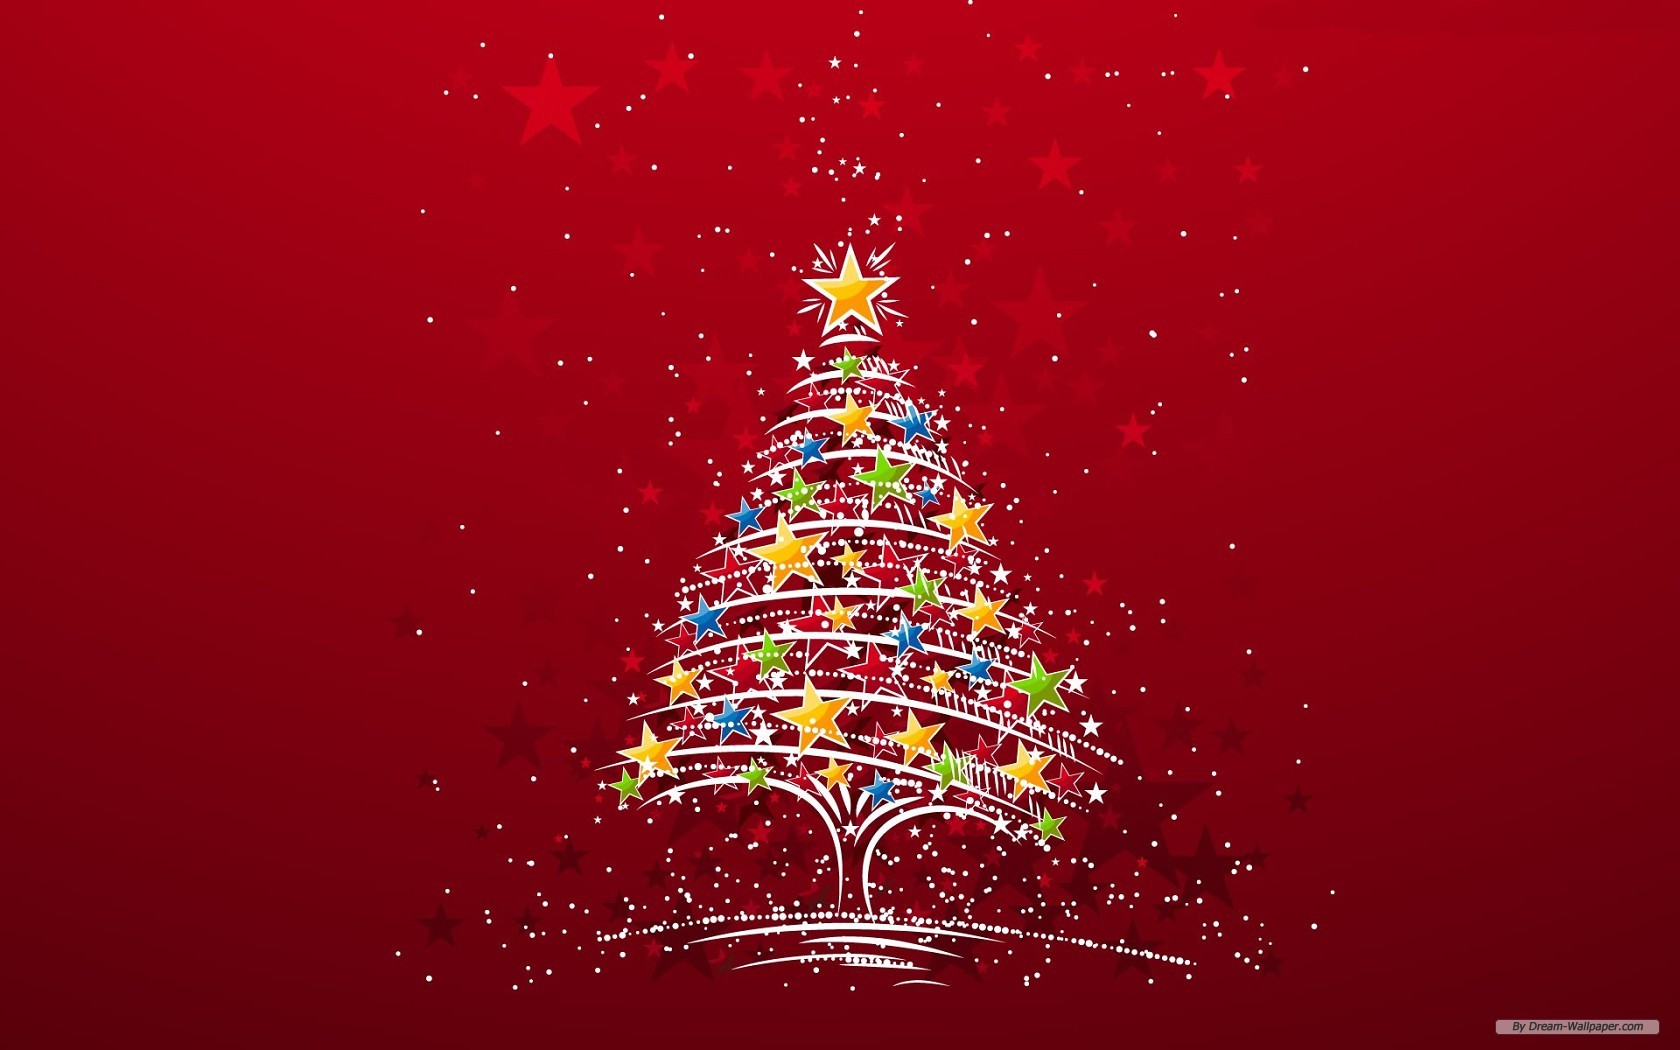 thema wallpaper kostenlos,weihnachtsbaum,weihnachtsdekoration,baum,weihnachten,heiligabend